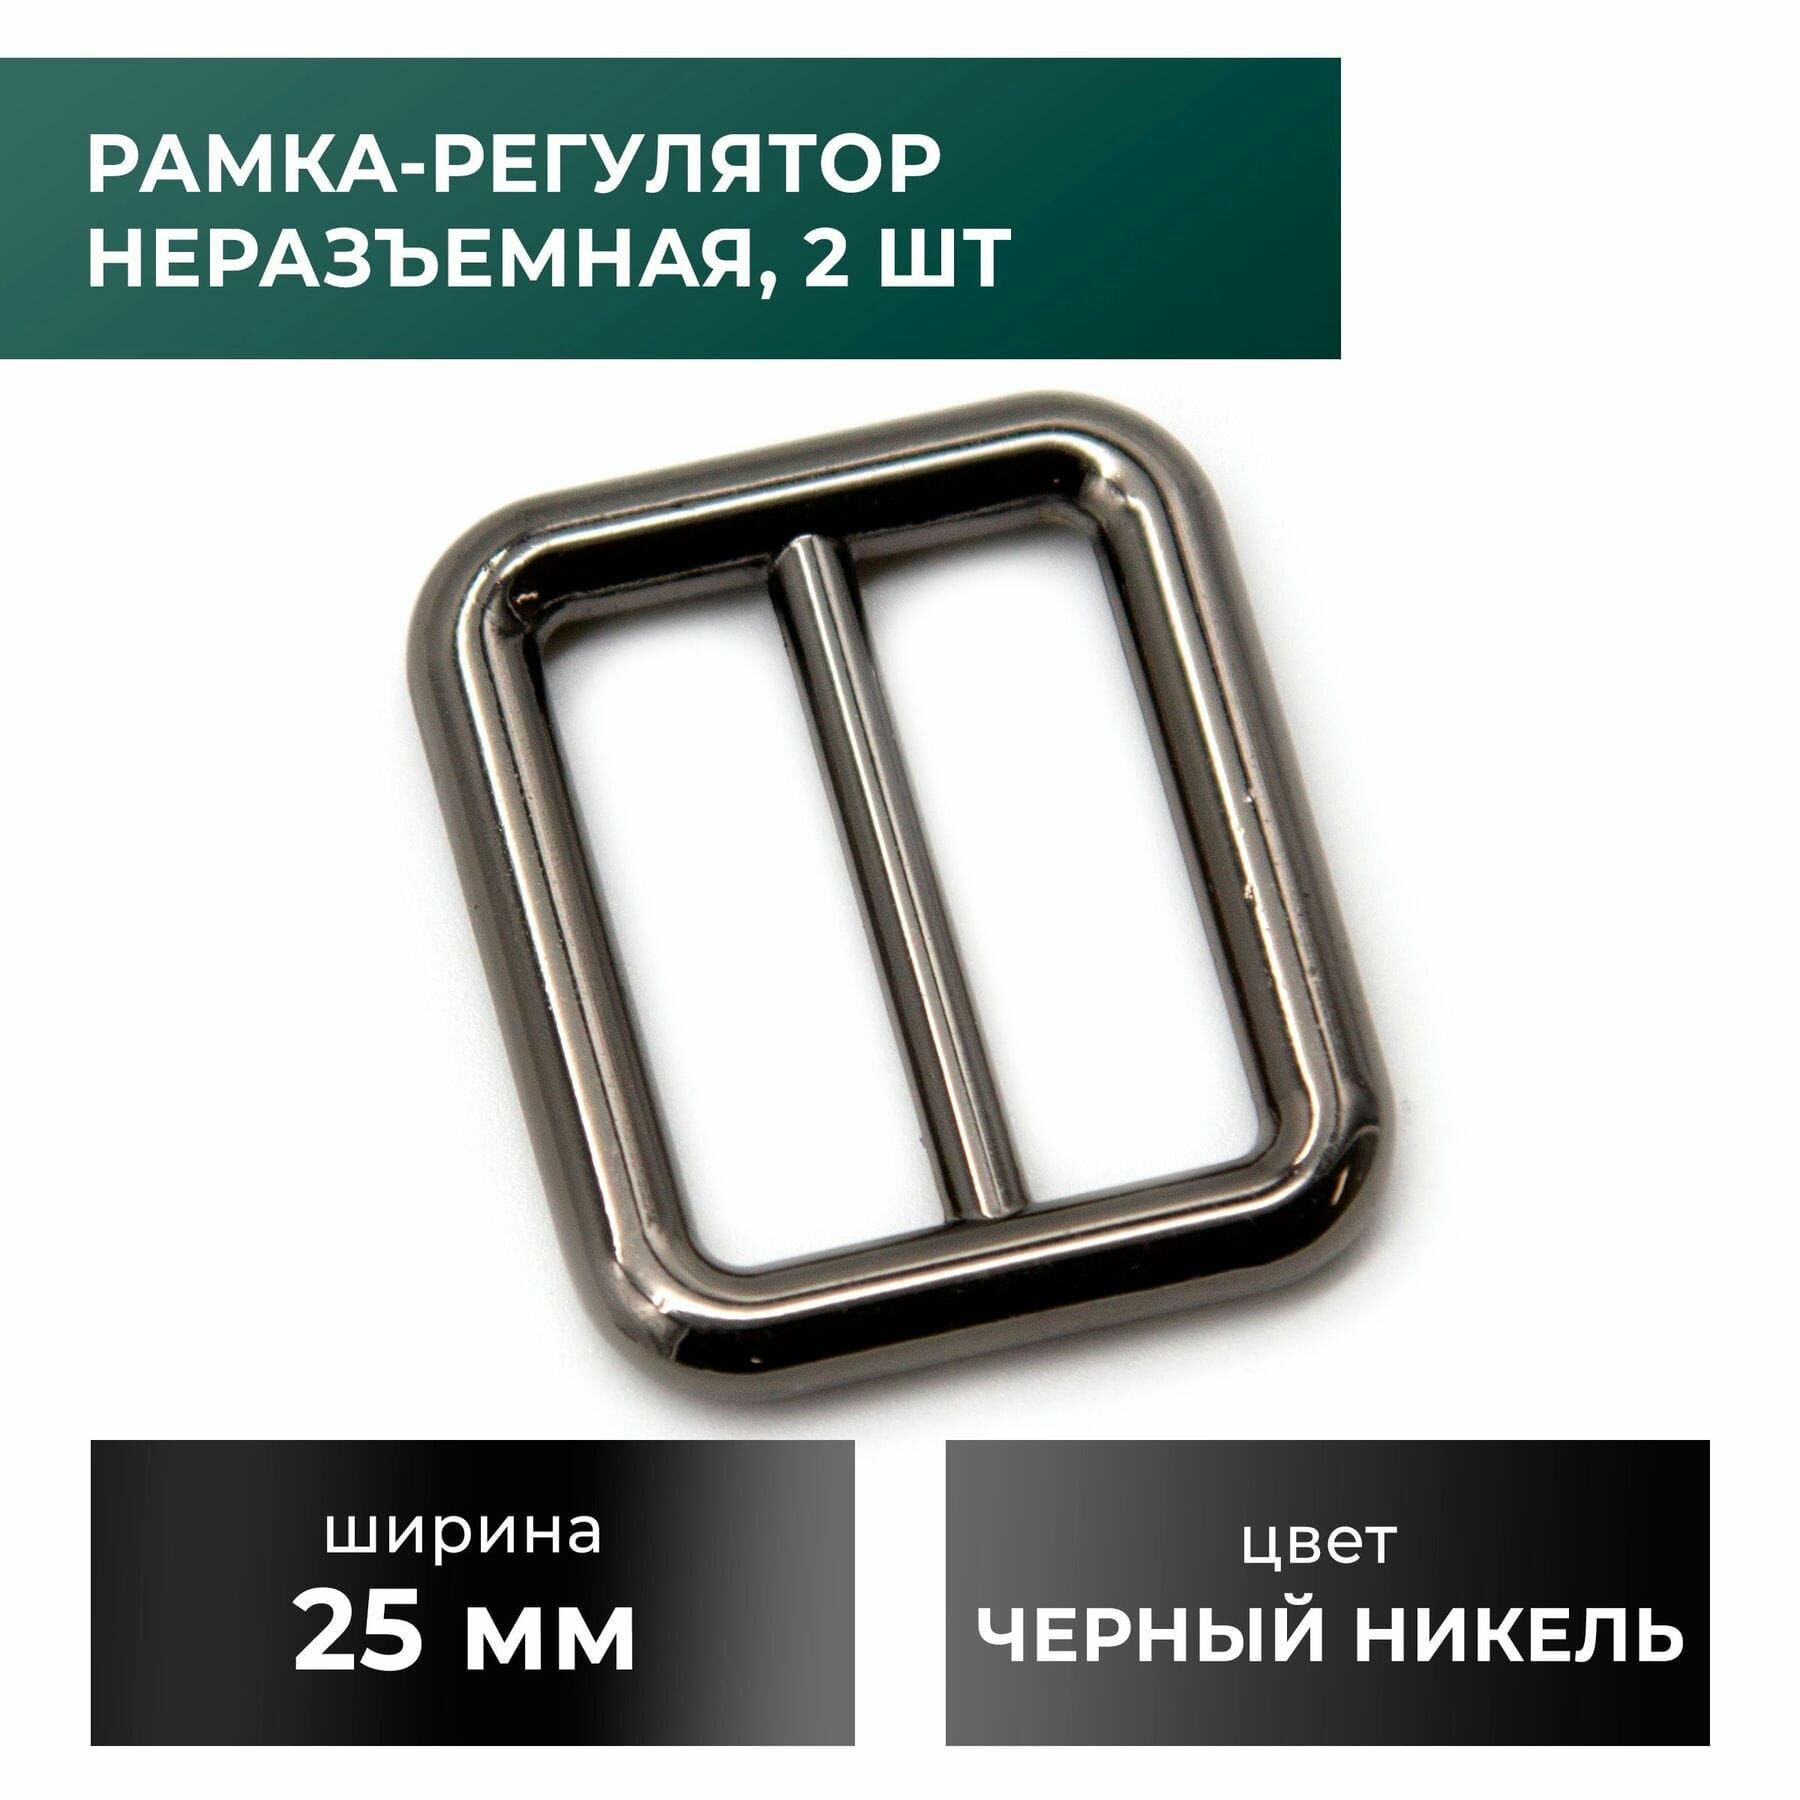 Рамка-регулятор / застежка / фурнитура для сумки 25 мм, черный никель, 2 шт